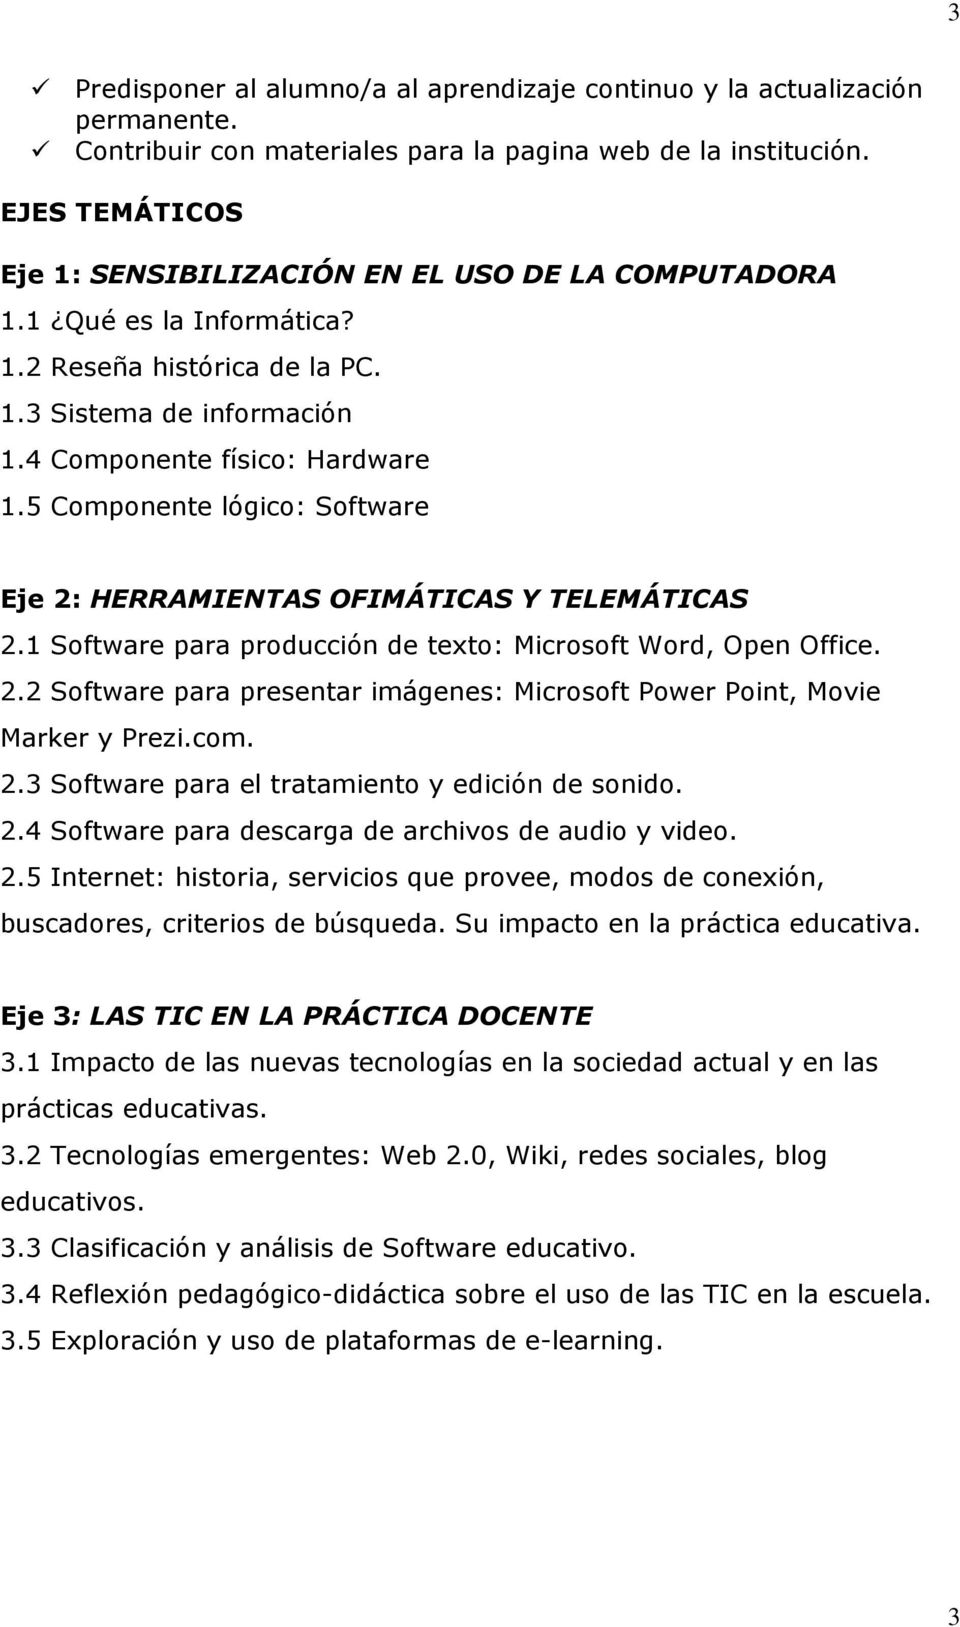 5 Componente lógico: Software Eje 2: HERRAMIENTAS OFIMÁTICAS Y TELEMÁTICAS 2.1 Software para producción de texto: Microsoft Word, Open Office. 2.2 Software para presentar imágenes: Microsoft Power Point, Movie Marker y Prezi.